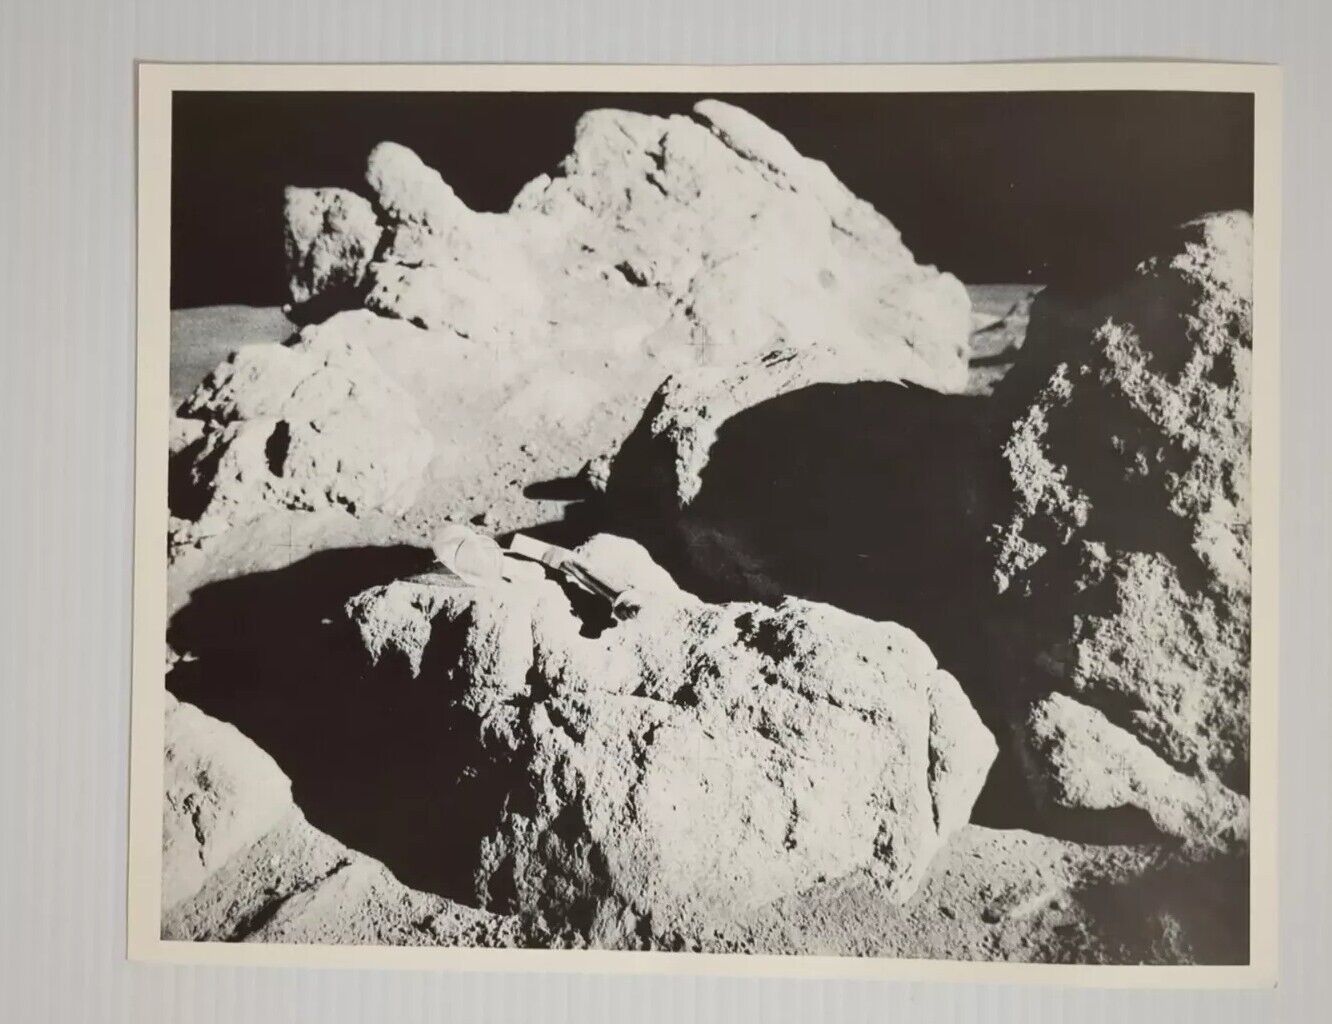 NASA Photo Apollo 14 Cone Crater Moon Rocks Hammer Collection Bag EVA 2 1971